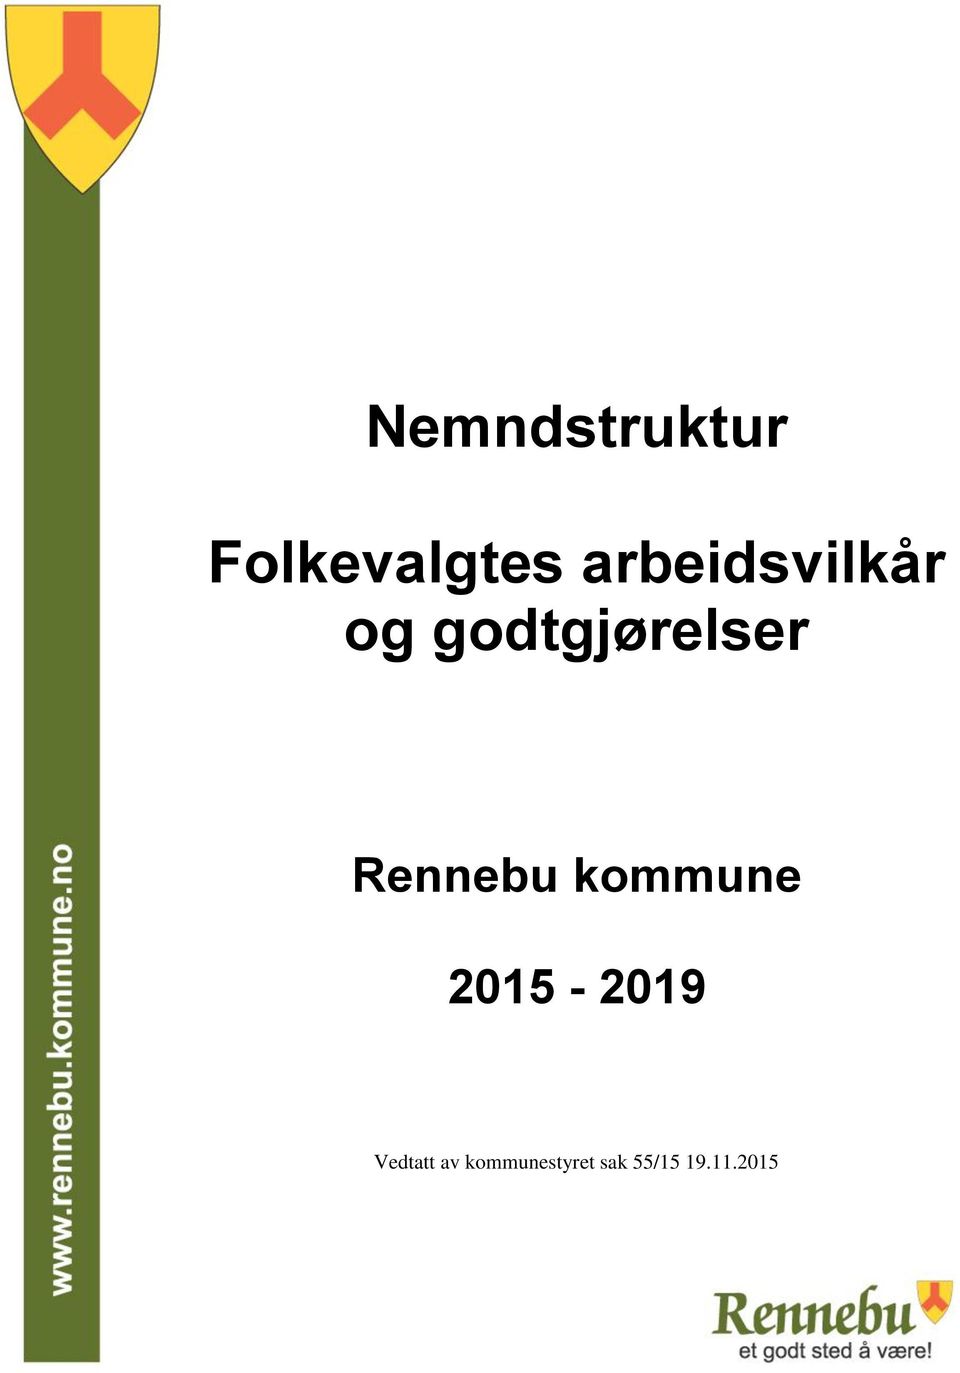 Rennebu kommune 2015-2019